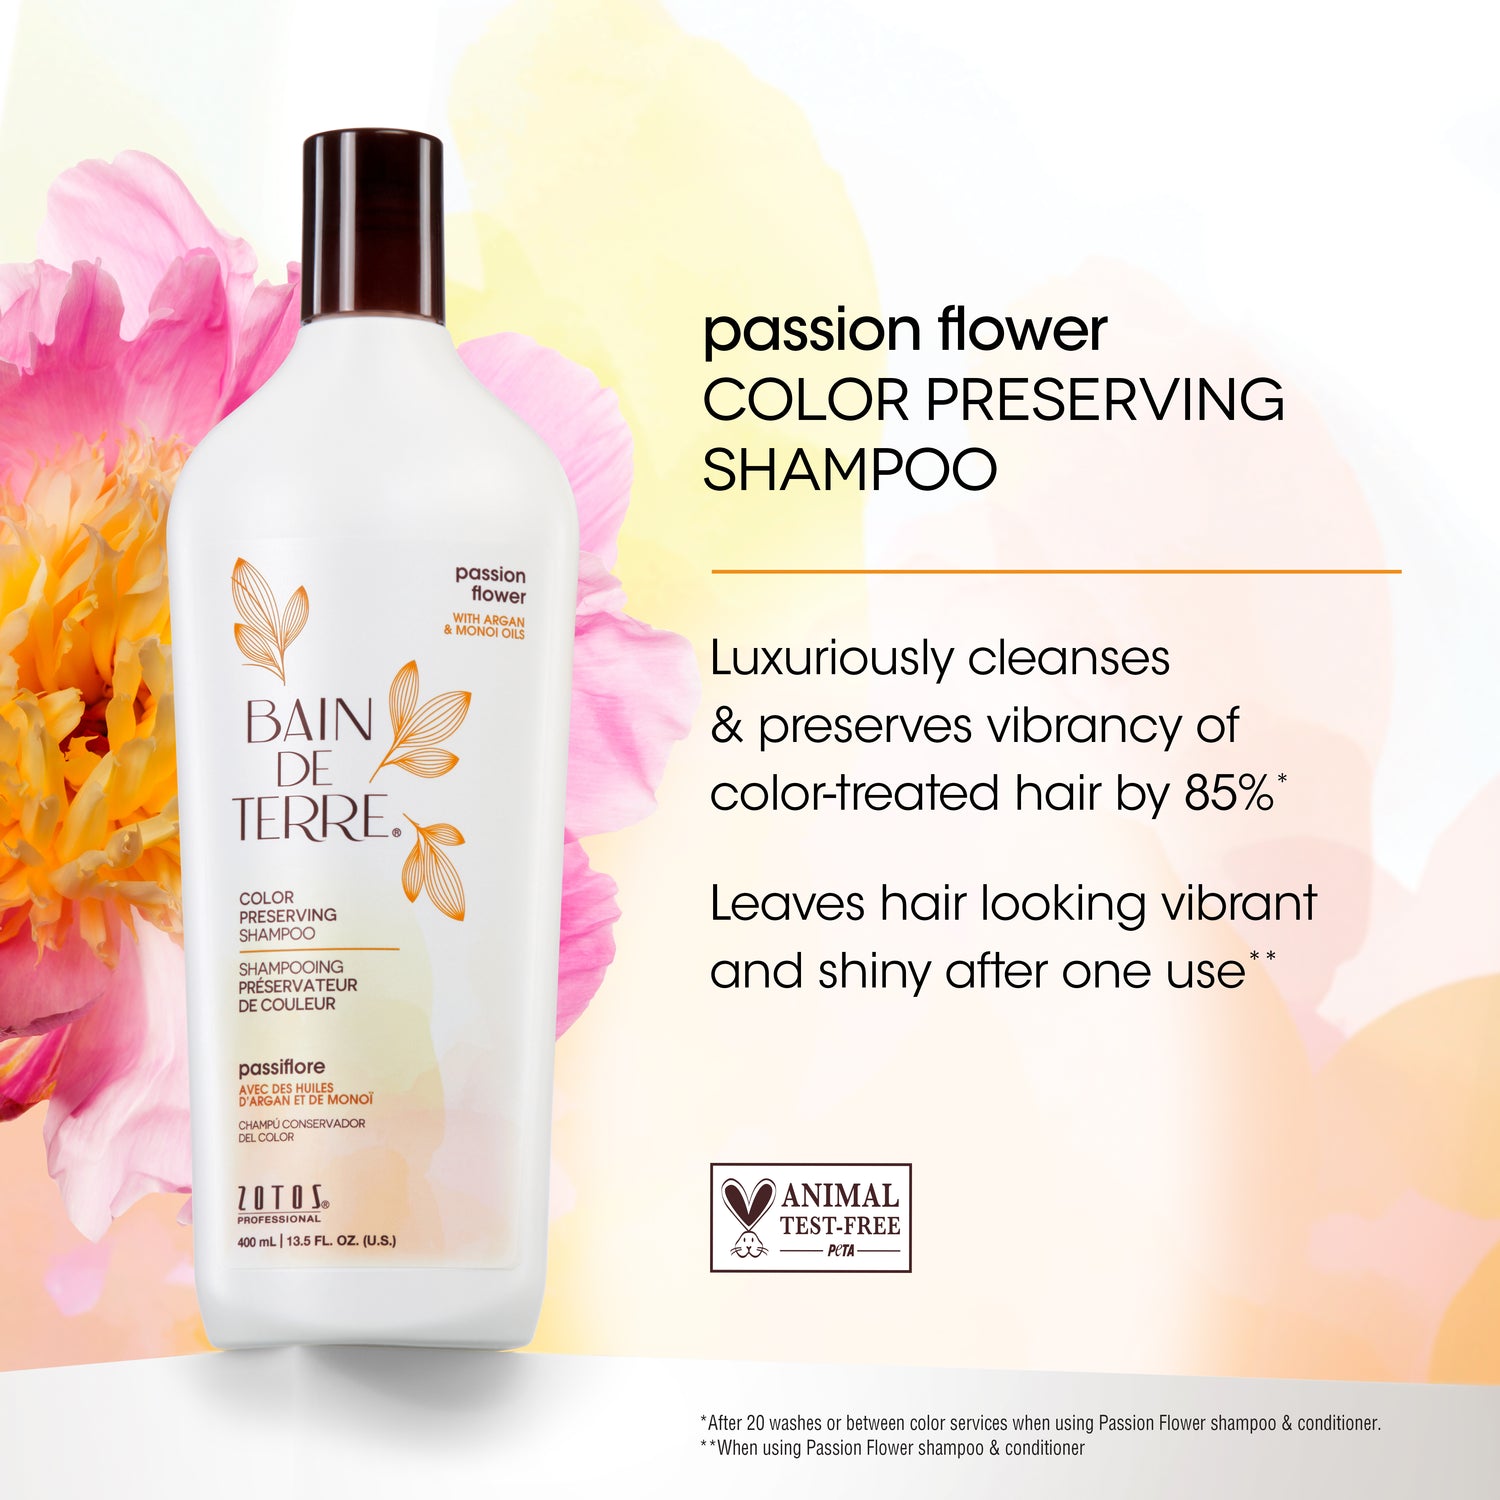 Bain de Terre® Color Preserving Shampoo, Passion Flower